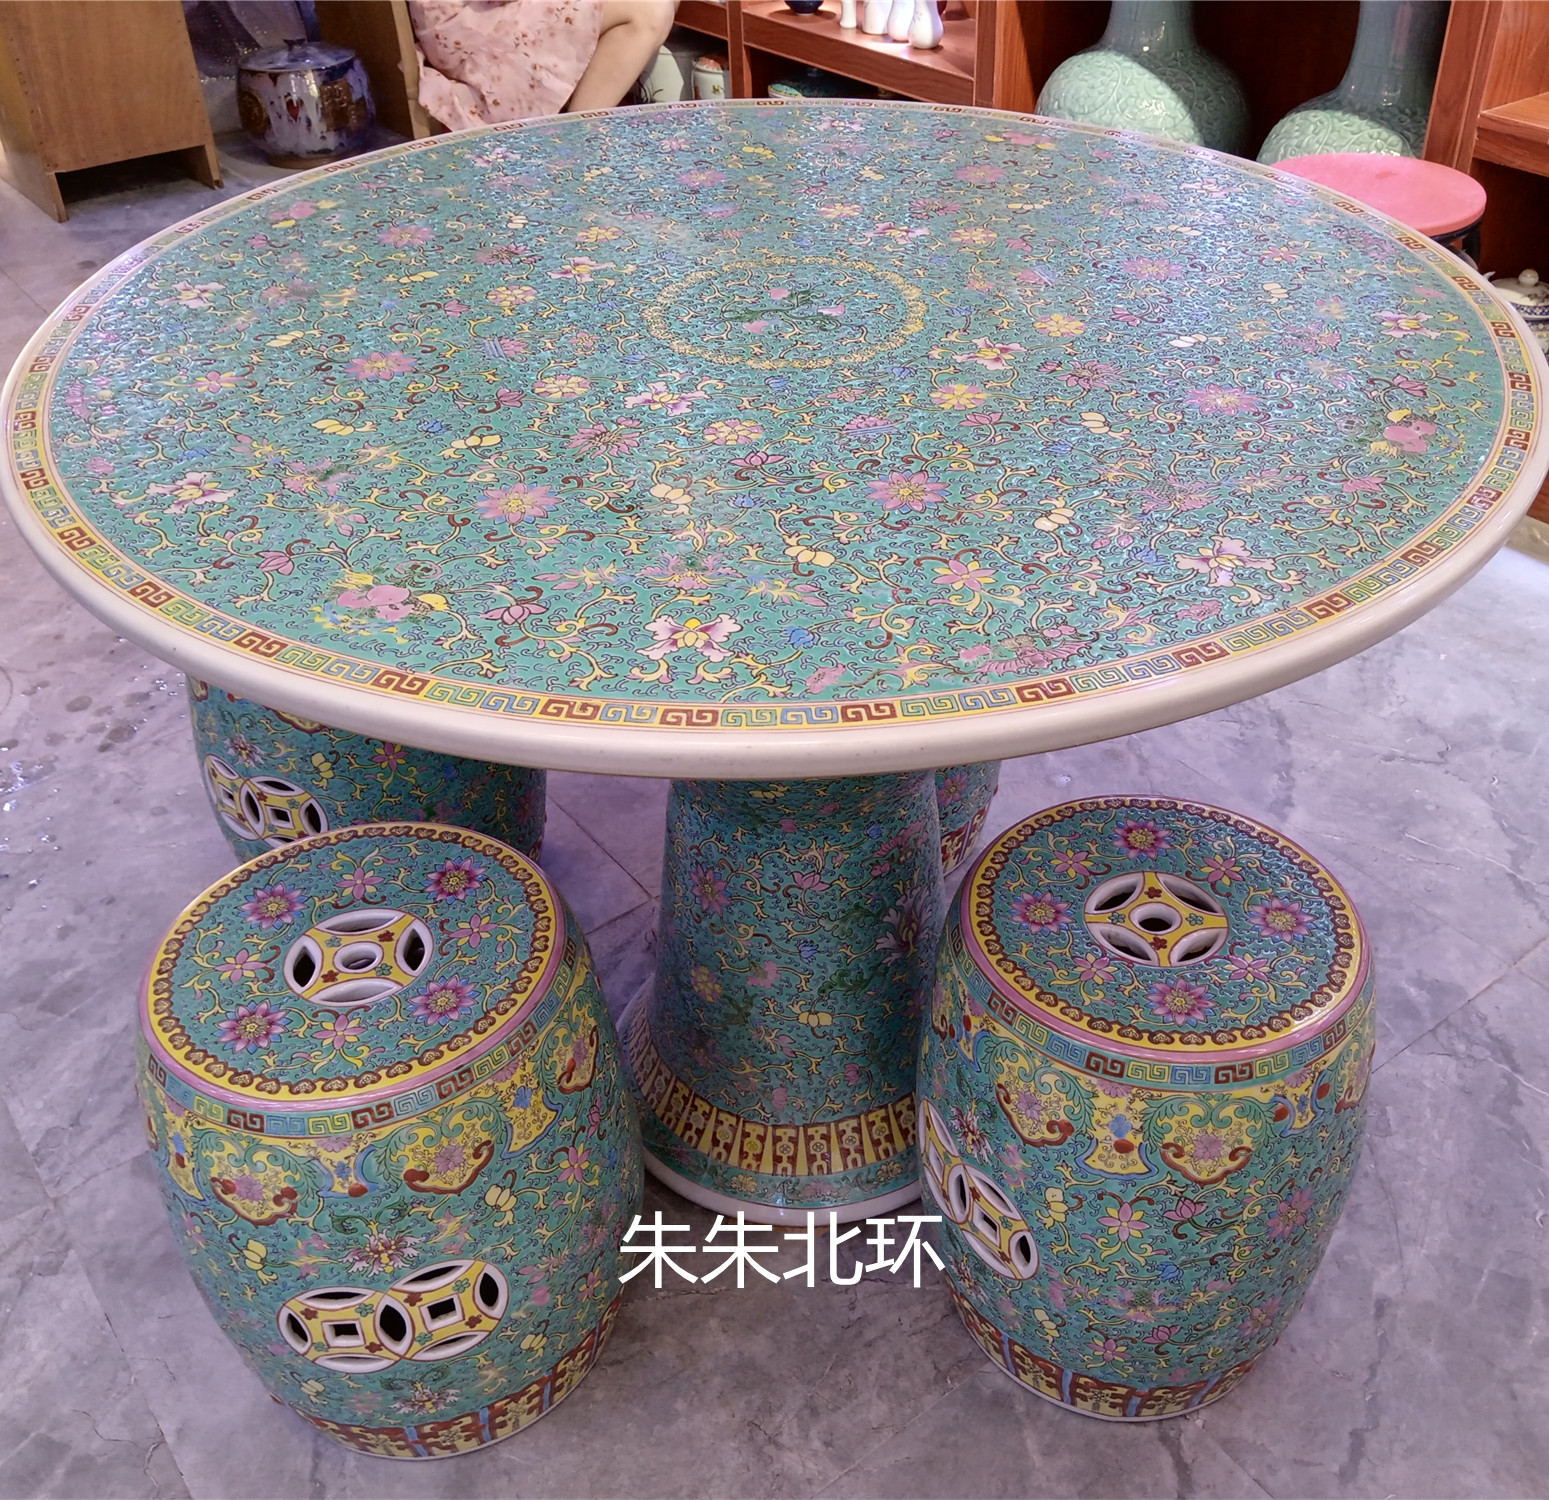 朱朱北环店陶瓷桌子凳子中式手绘宝石绿粉彩寿桃缠枝莲纹桌椅套装